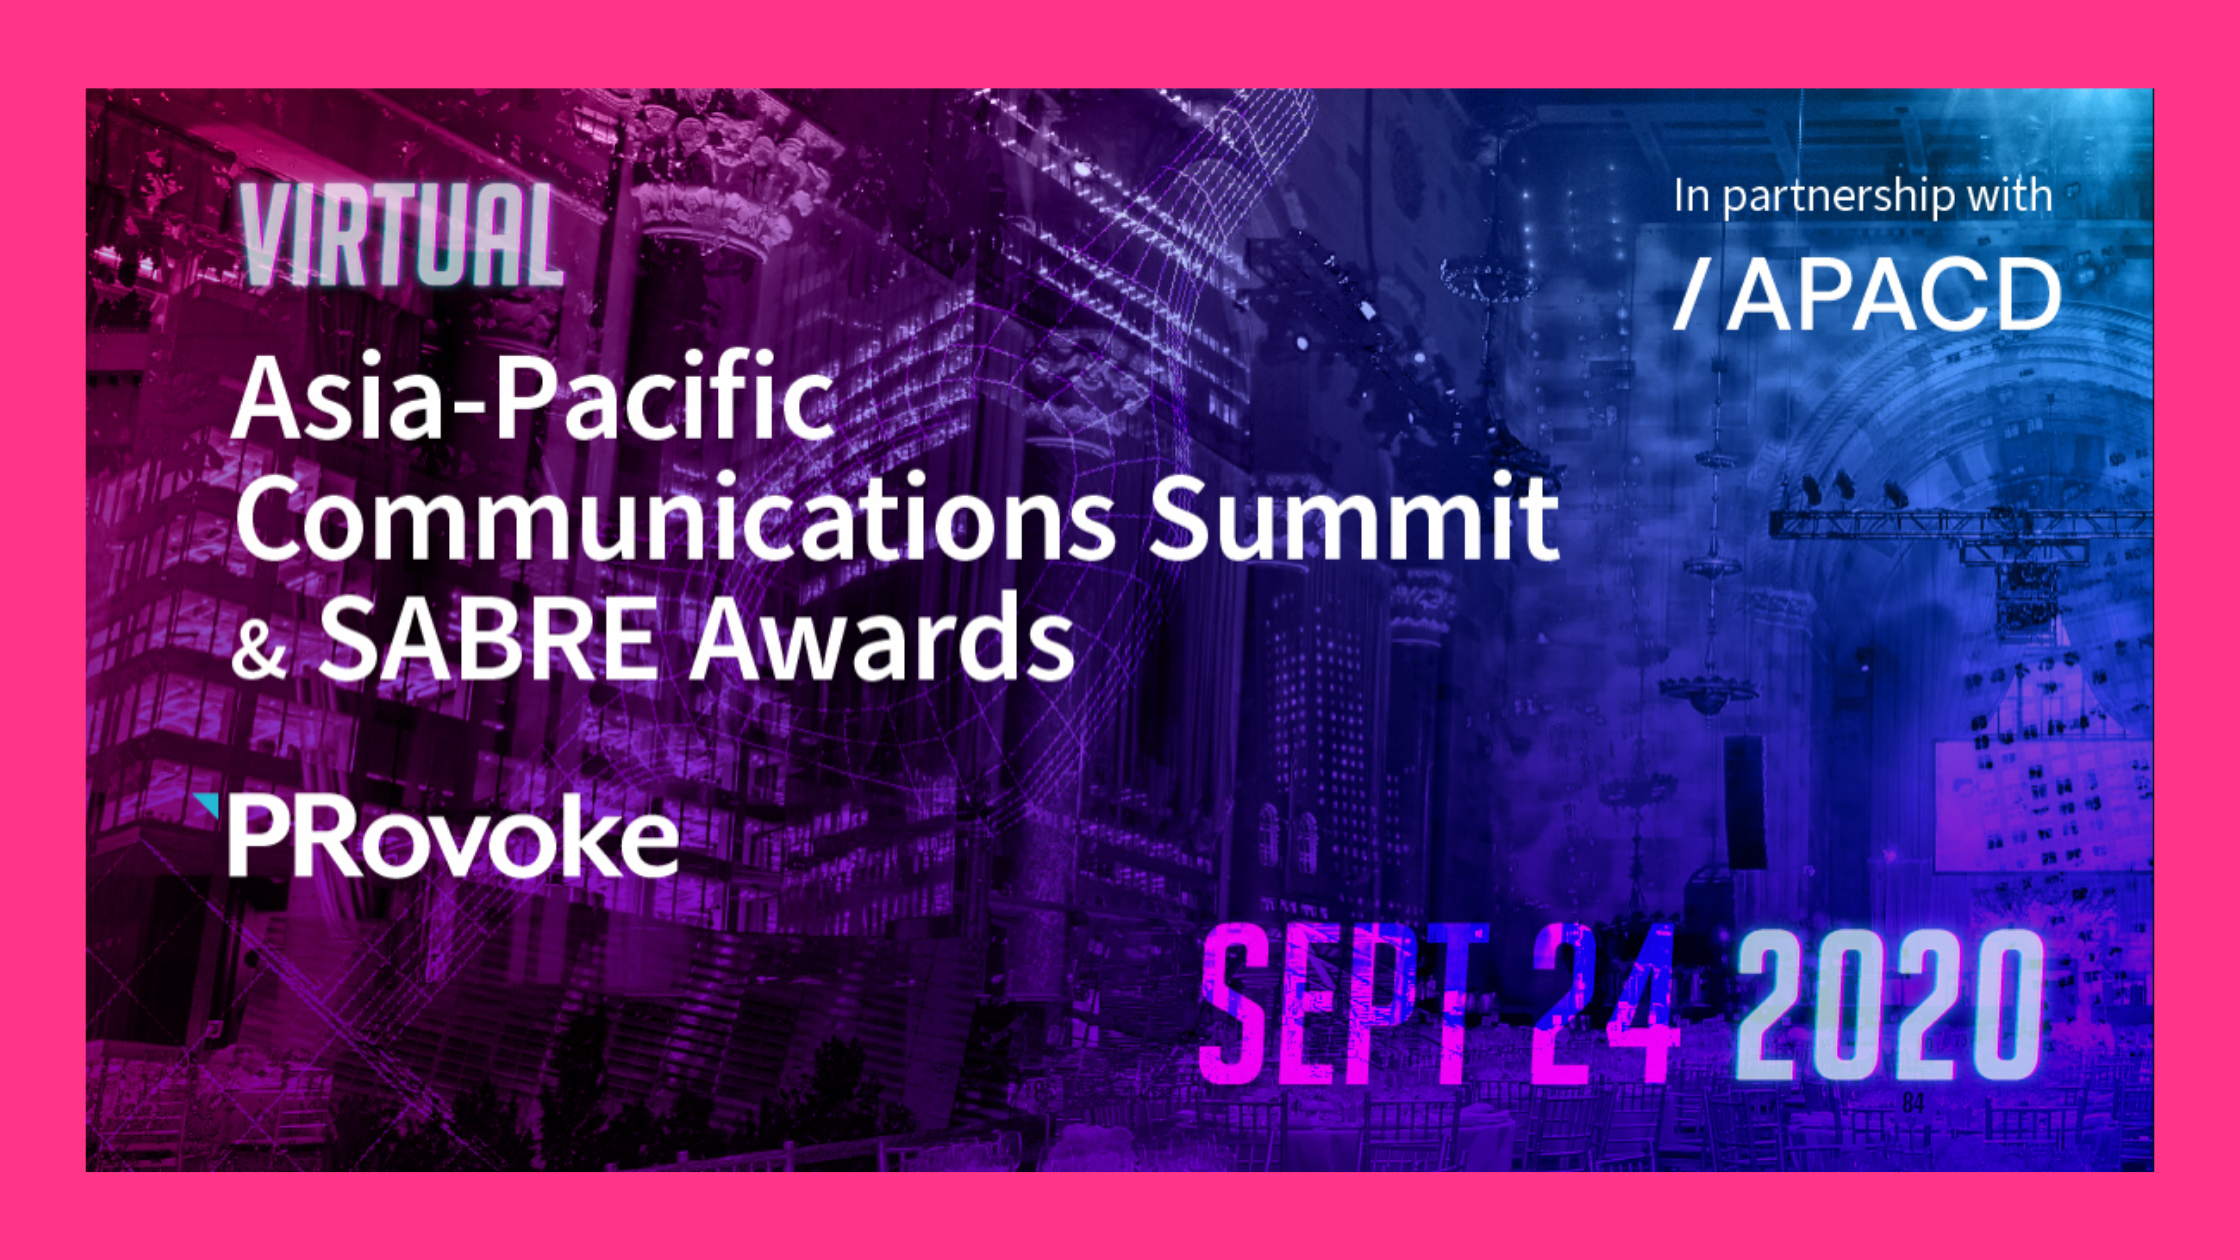 Asia Pacific, SABRE Awards, Asia- Pacific, Provoke, Provoke Media, The Orangeblowfish